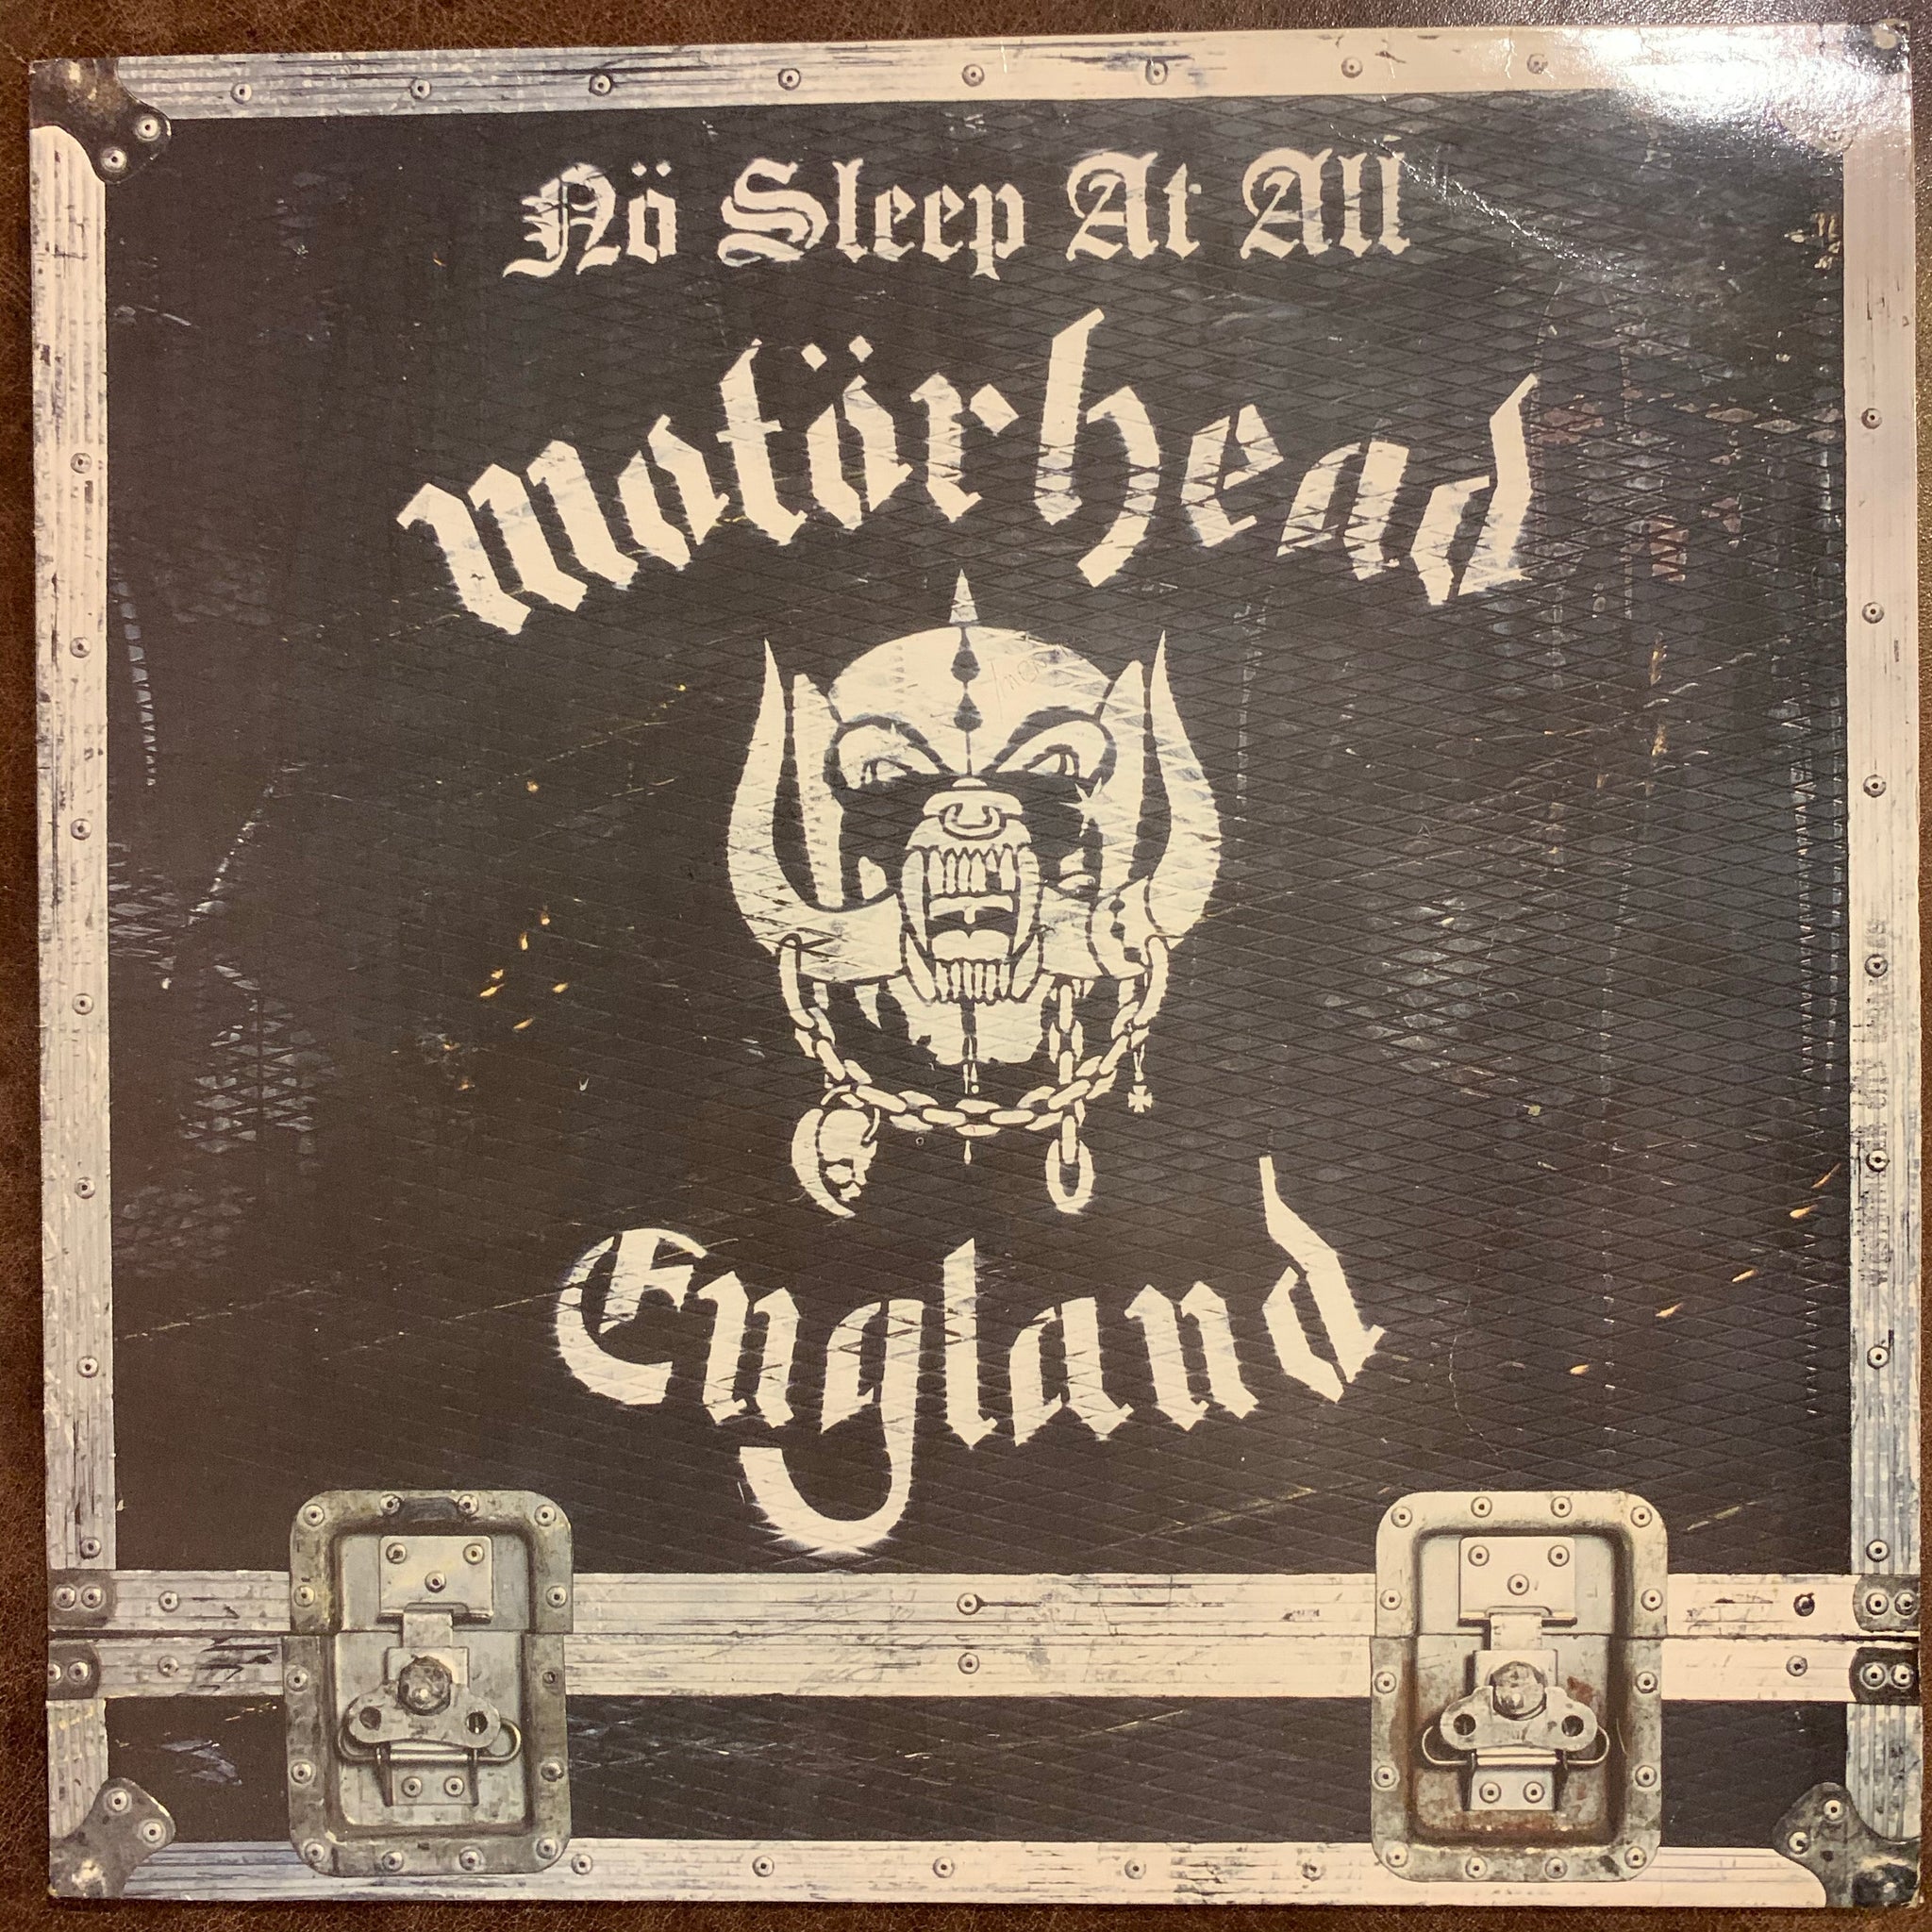 Motorhead England - No Sleep At All